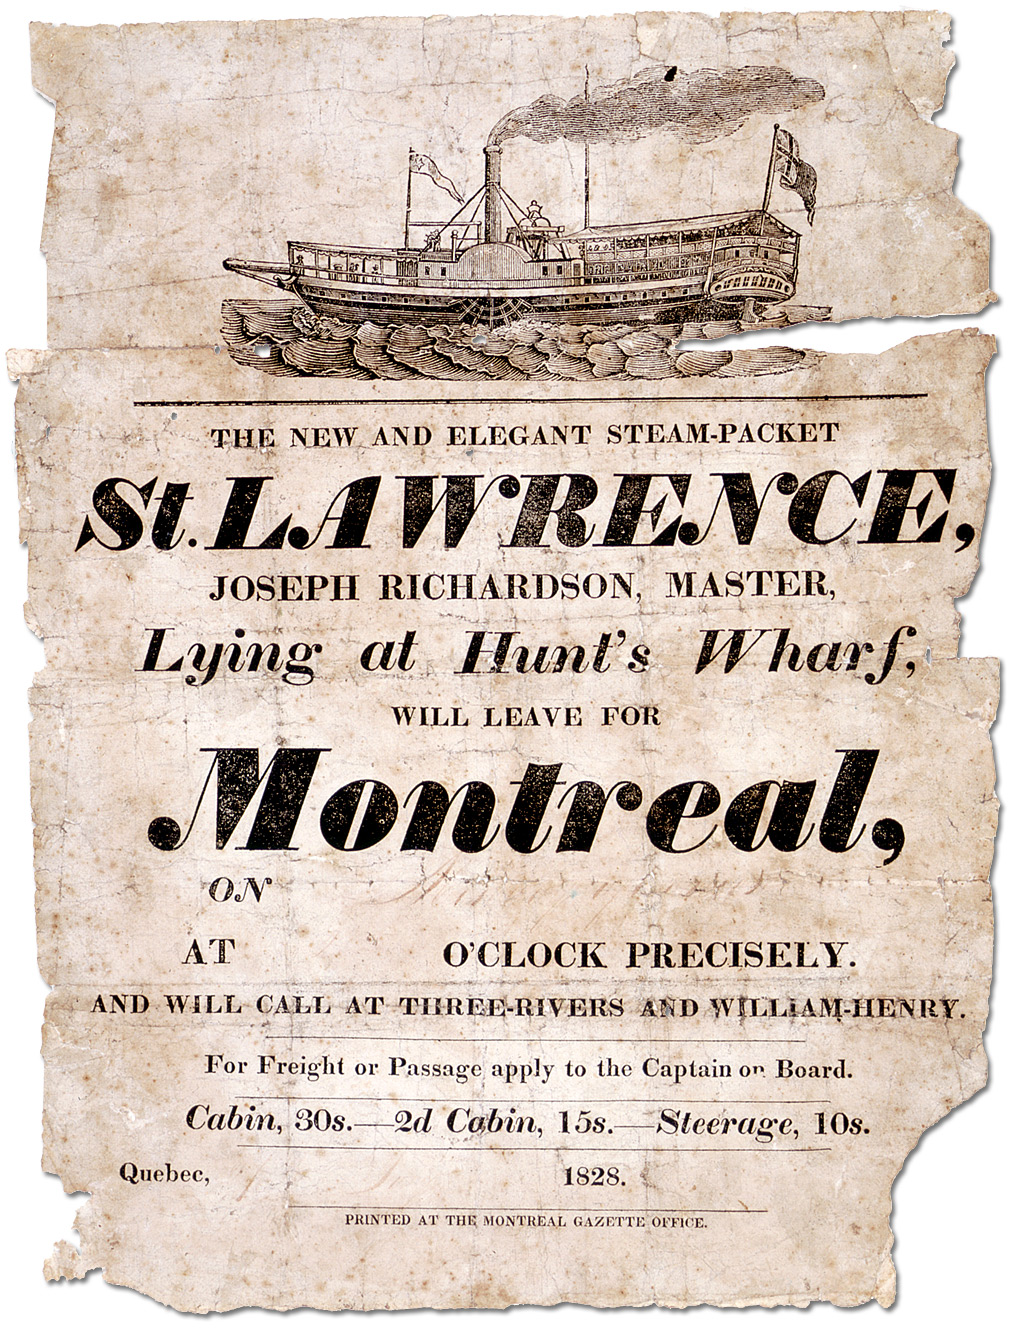 Affiche : L’élégant nouveau navire à vapeur St. Lawrence desservant Trois-Rivières et William Henry, 1828